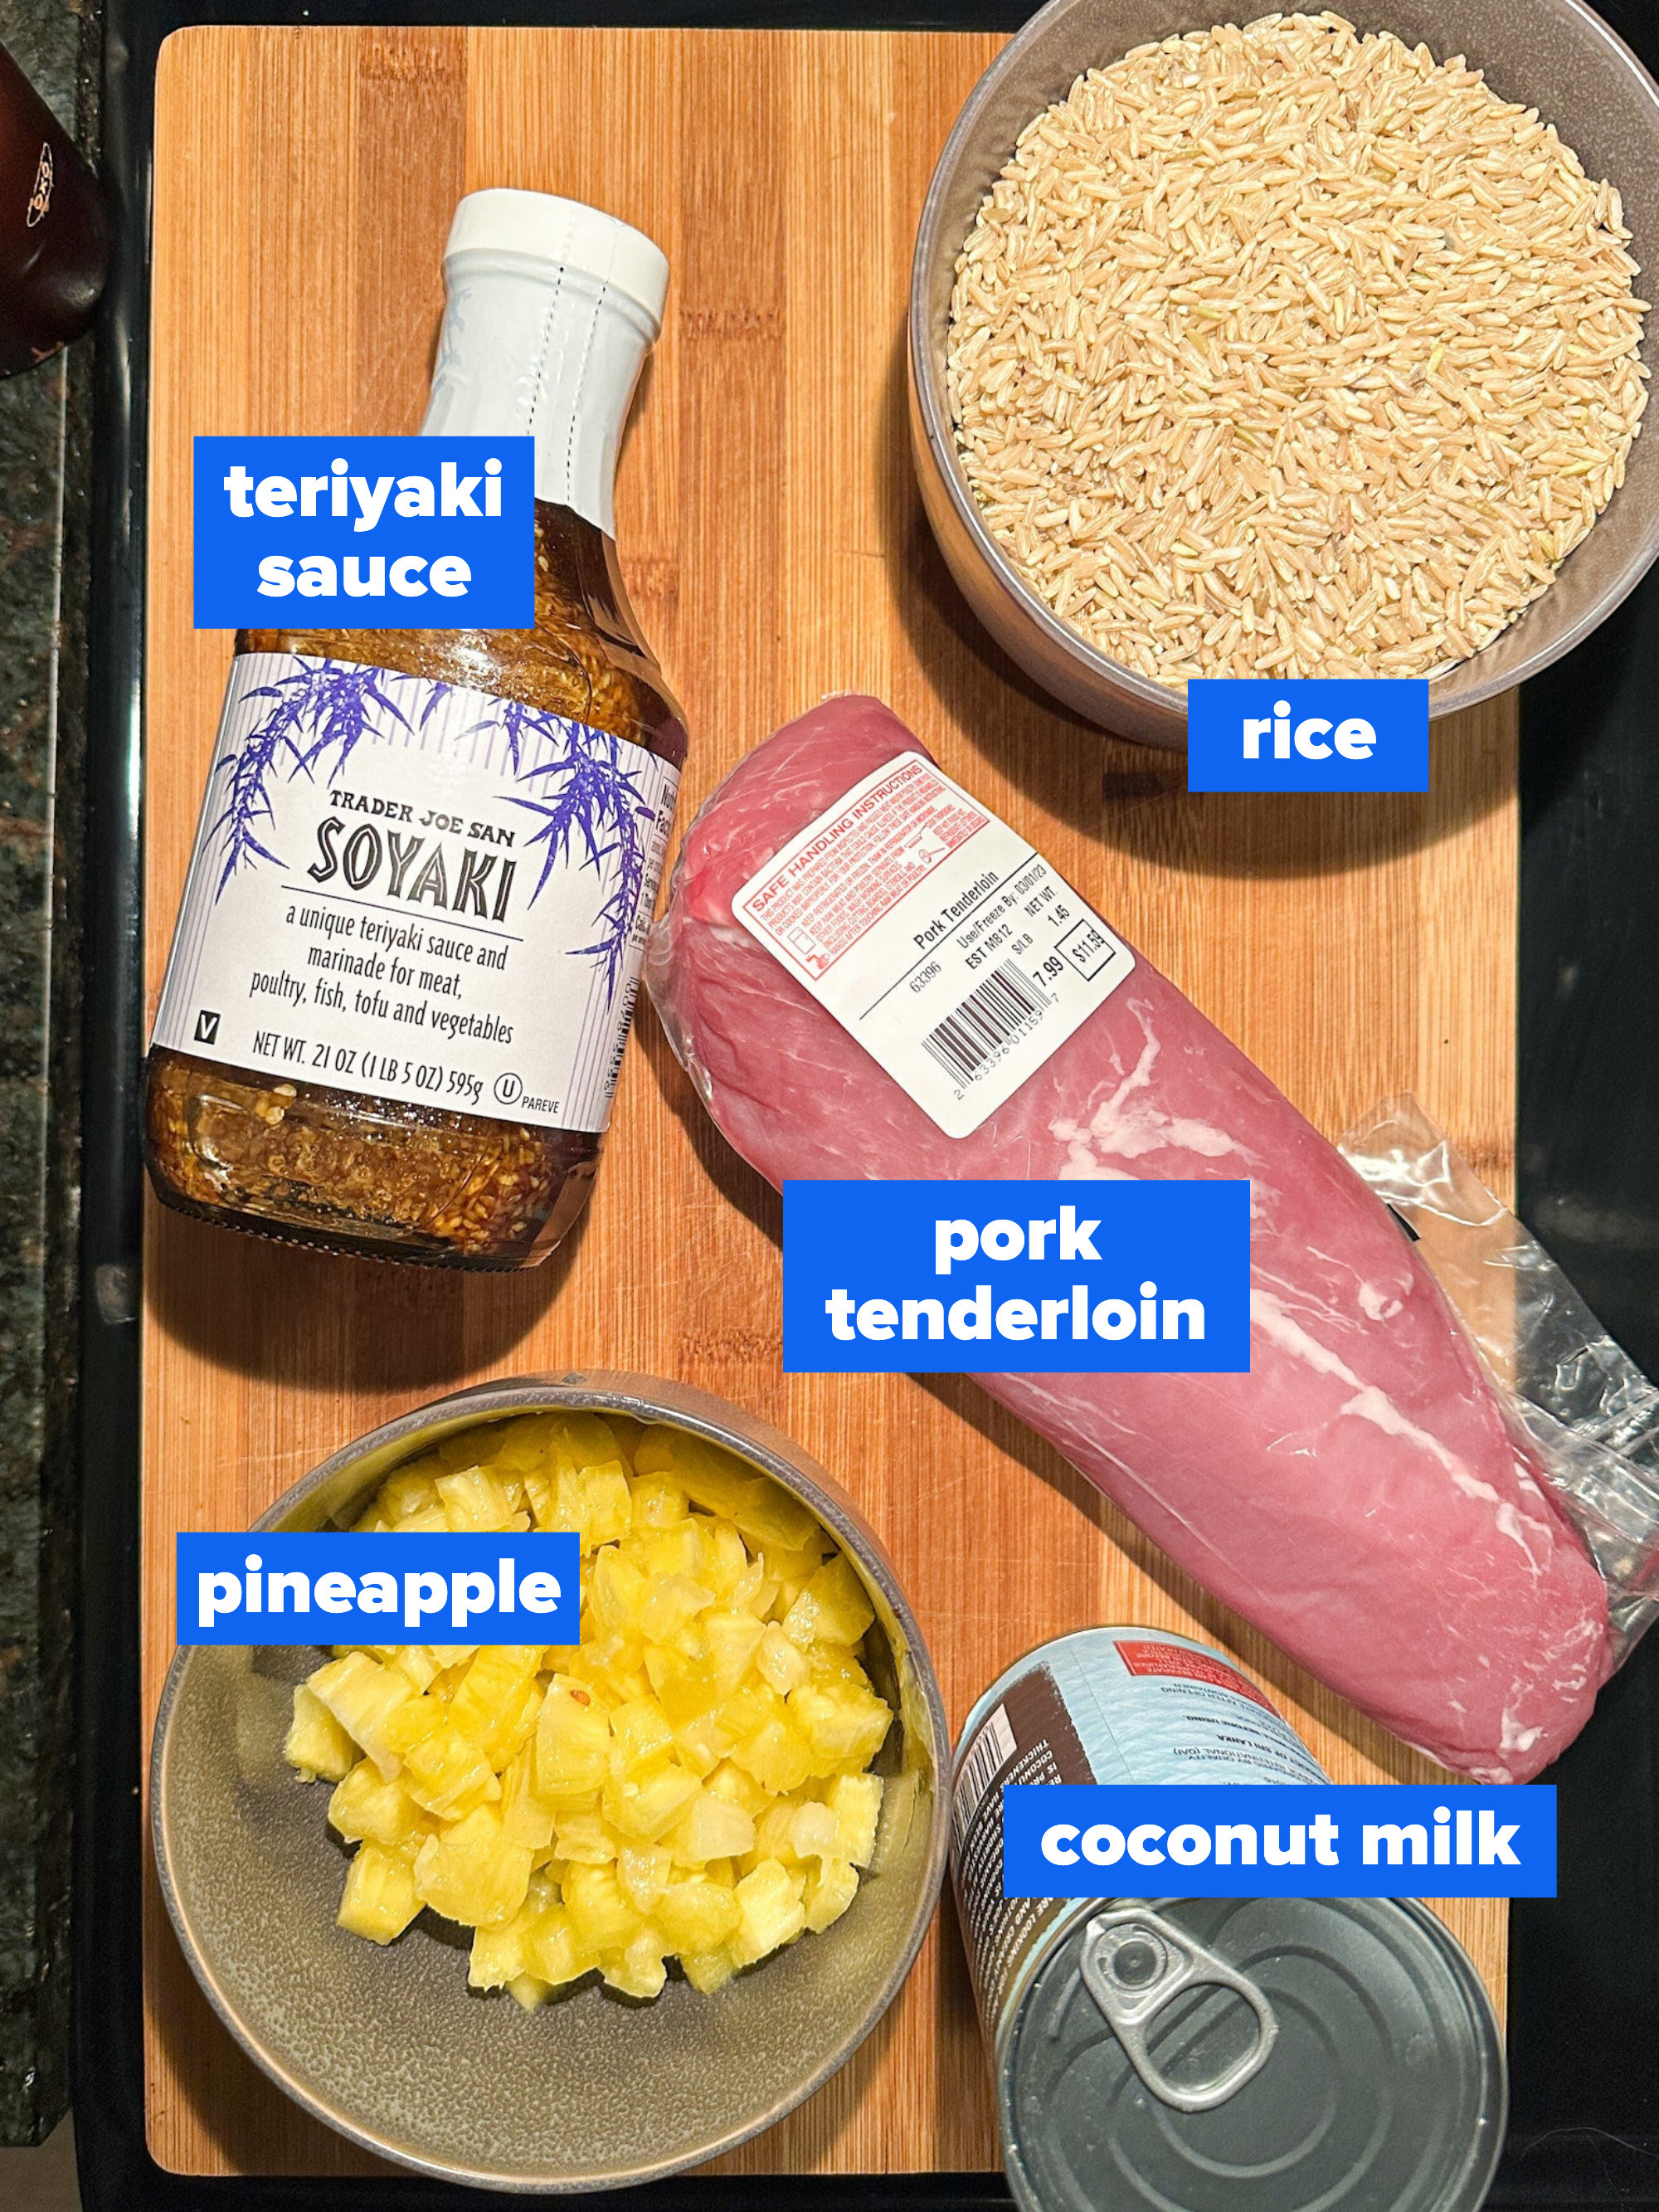 the ingredients: rice, teriyaki sauce, pork tenderloin, pineapple, coconut milk